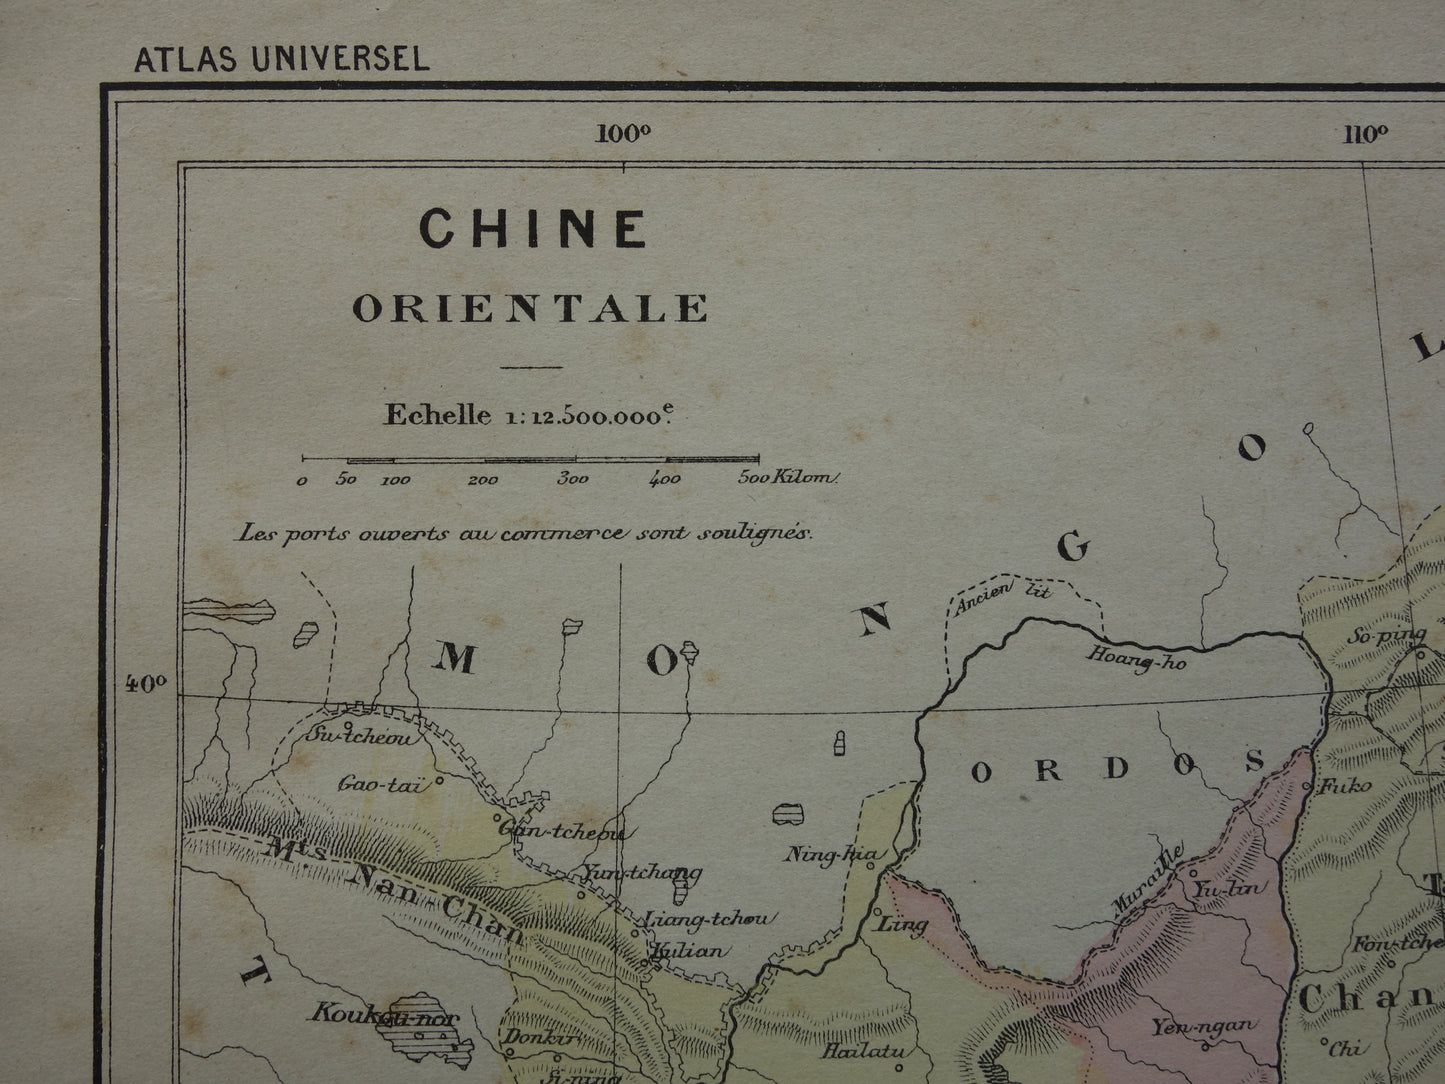 CHINA Oude kaart van Oost China uit het jaar 1896 historische landkaart China oude vintage kaarten